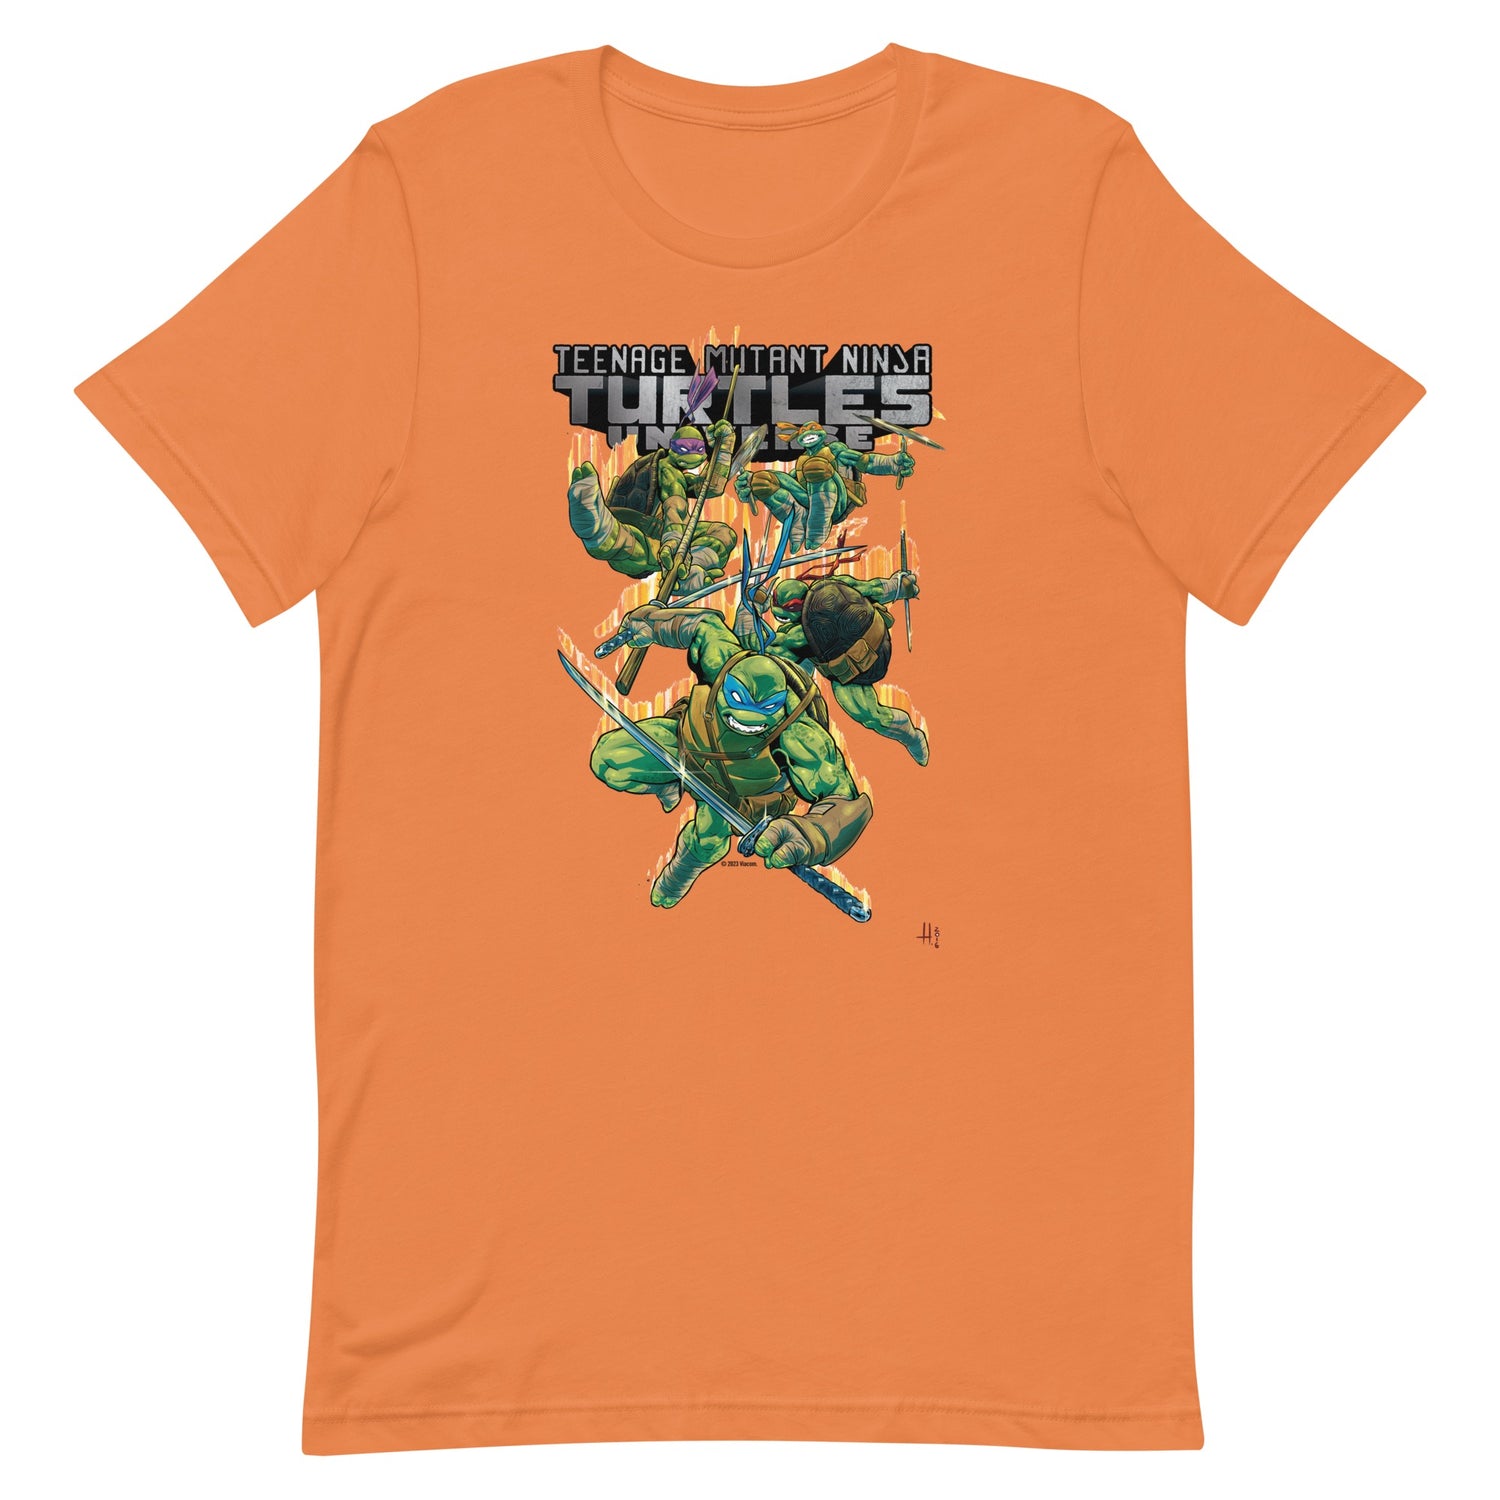 TMNT Teenage Mutant Ninja Turtles Unisex Adult T Shirt